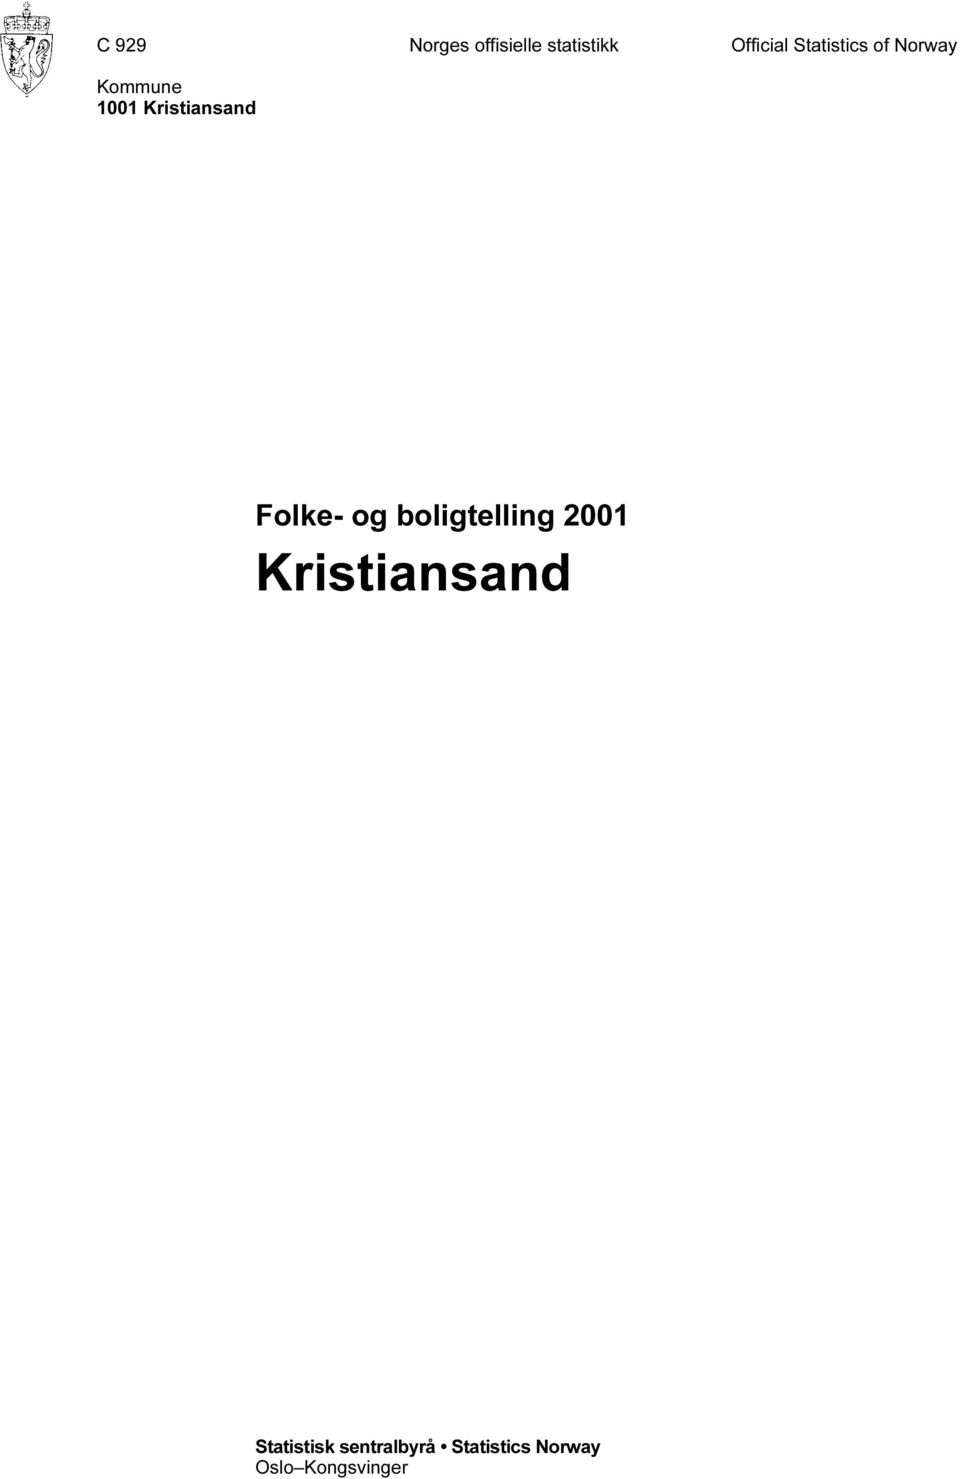 Folke- og boligtelling 2001 Kristiansand